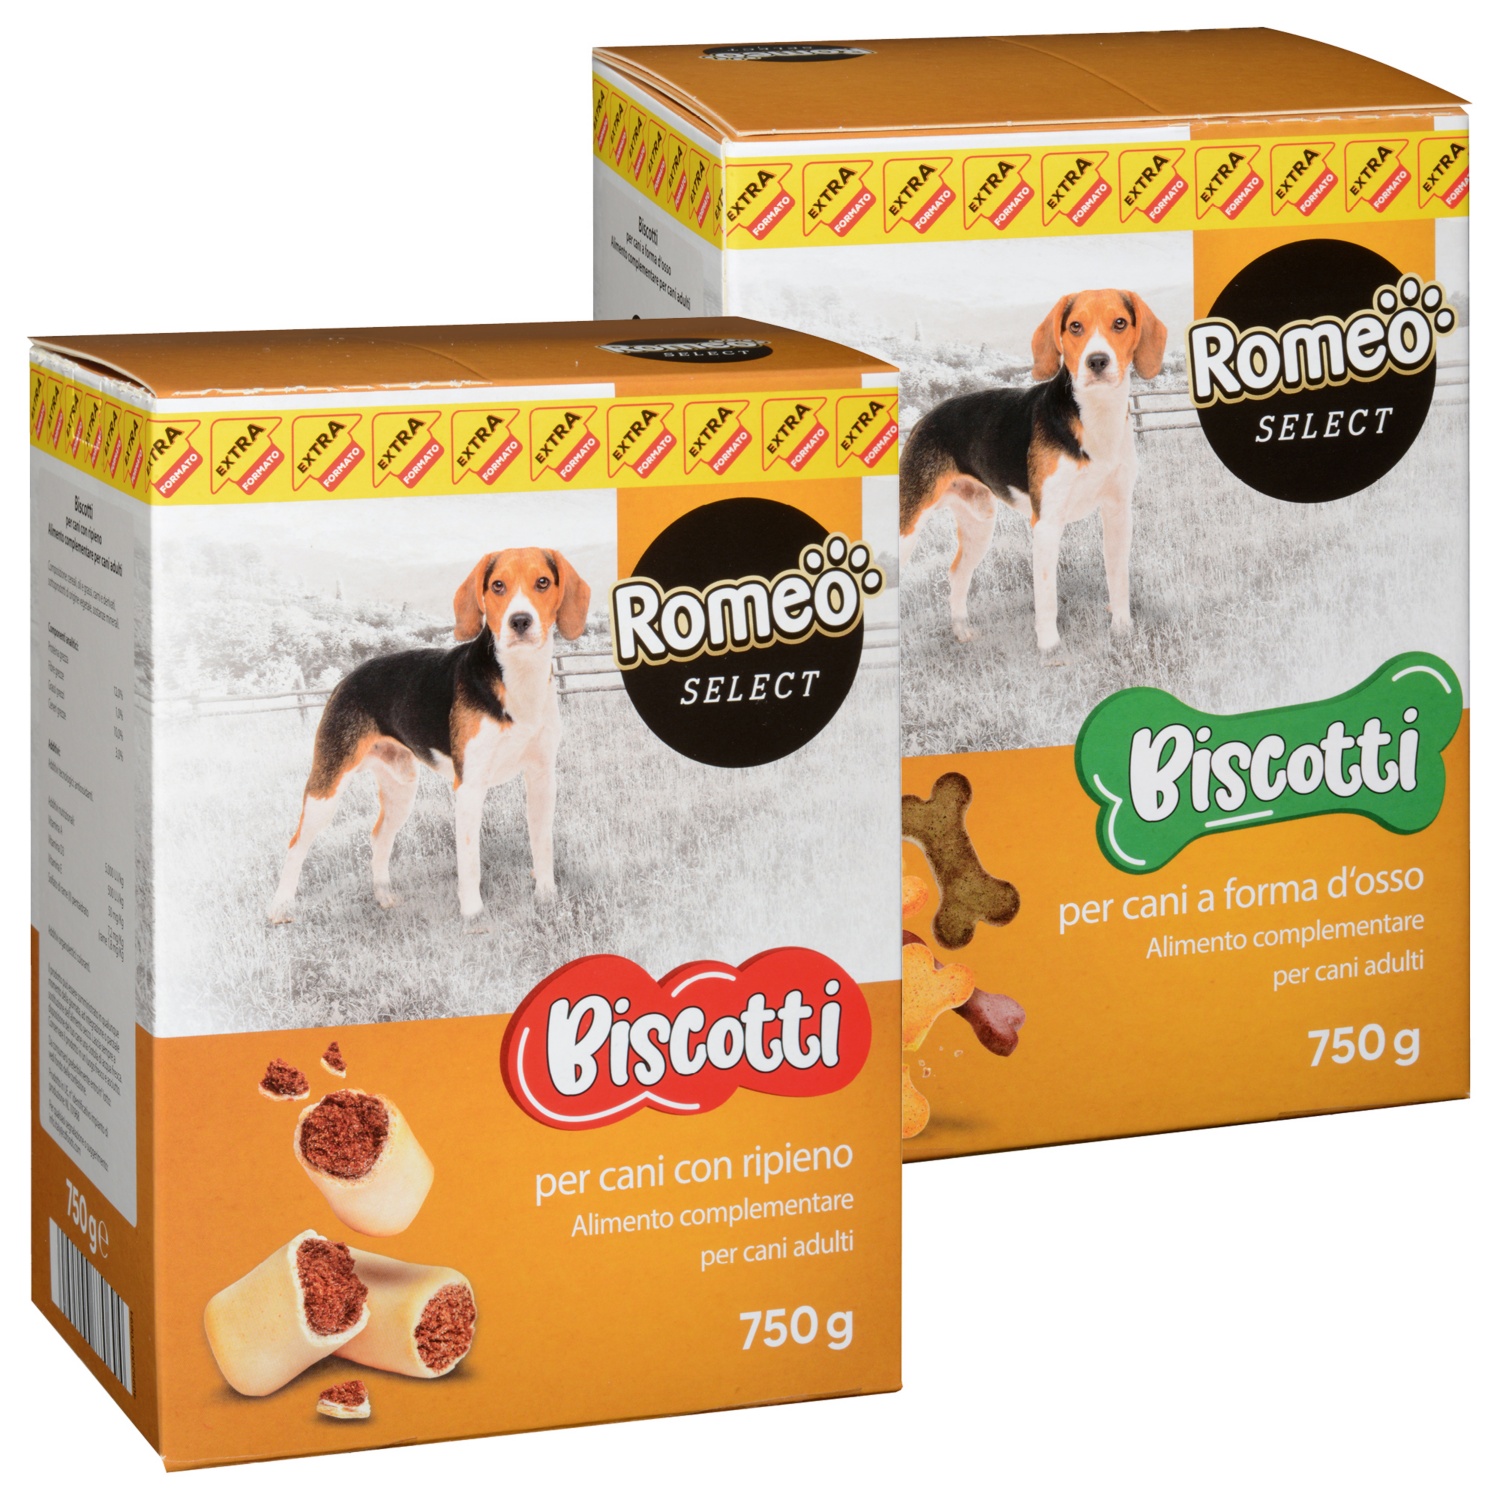 ROMEO SELECT Biscotti per cani